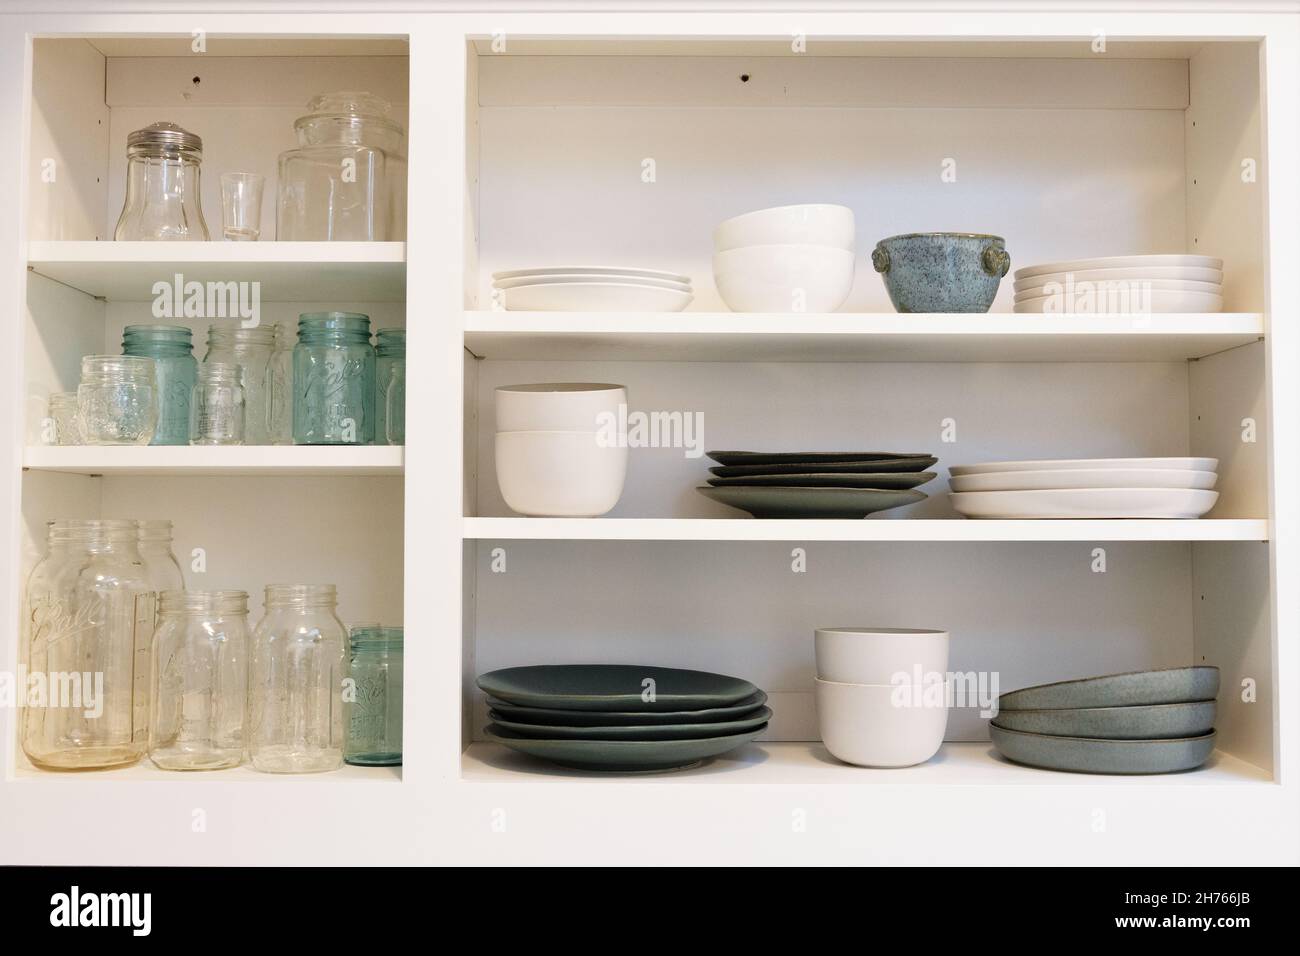 Armoires de cuisine avec un concept ouvert (pas de portes) contenant des pots et des plats de maçon clairs, blancs et de couleur aqua. Banque D'Images